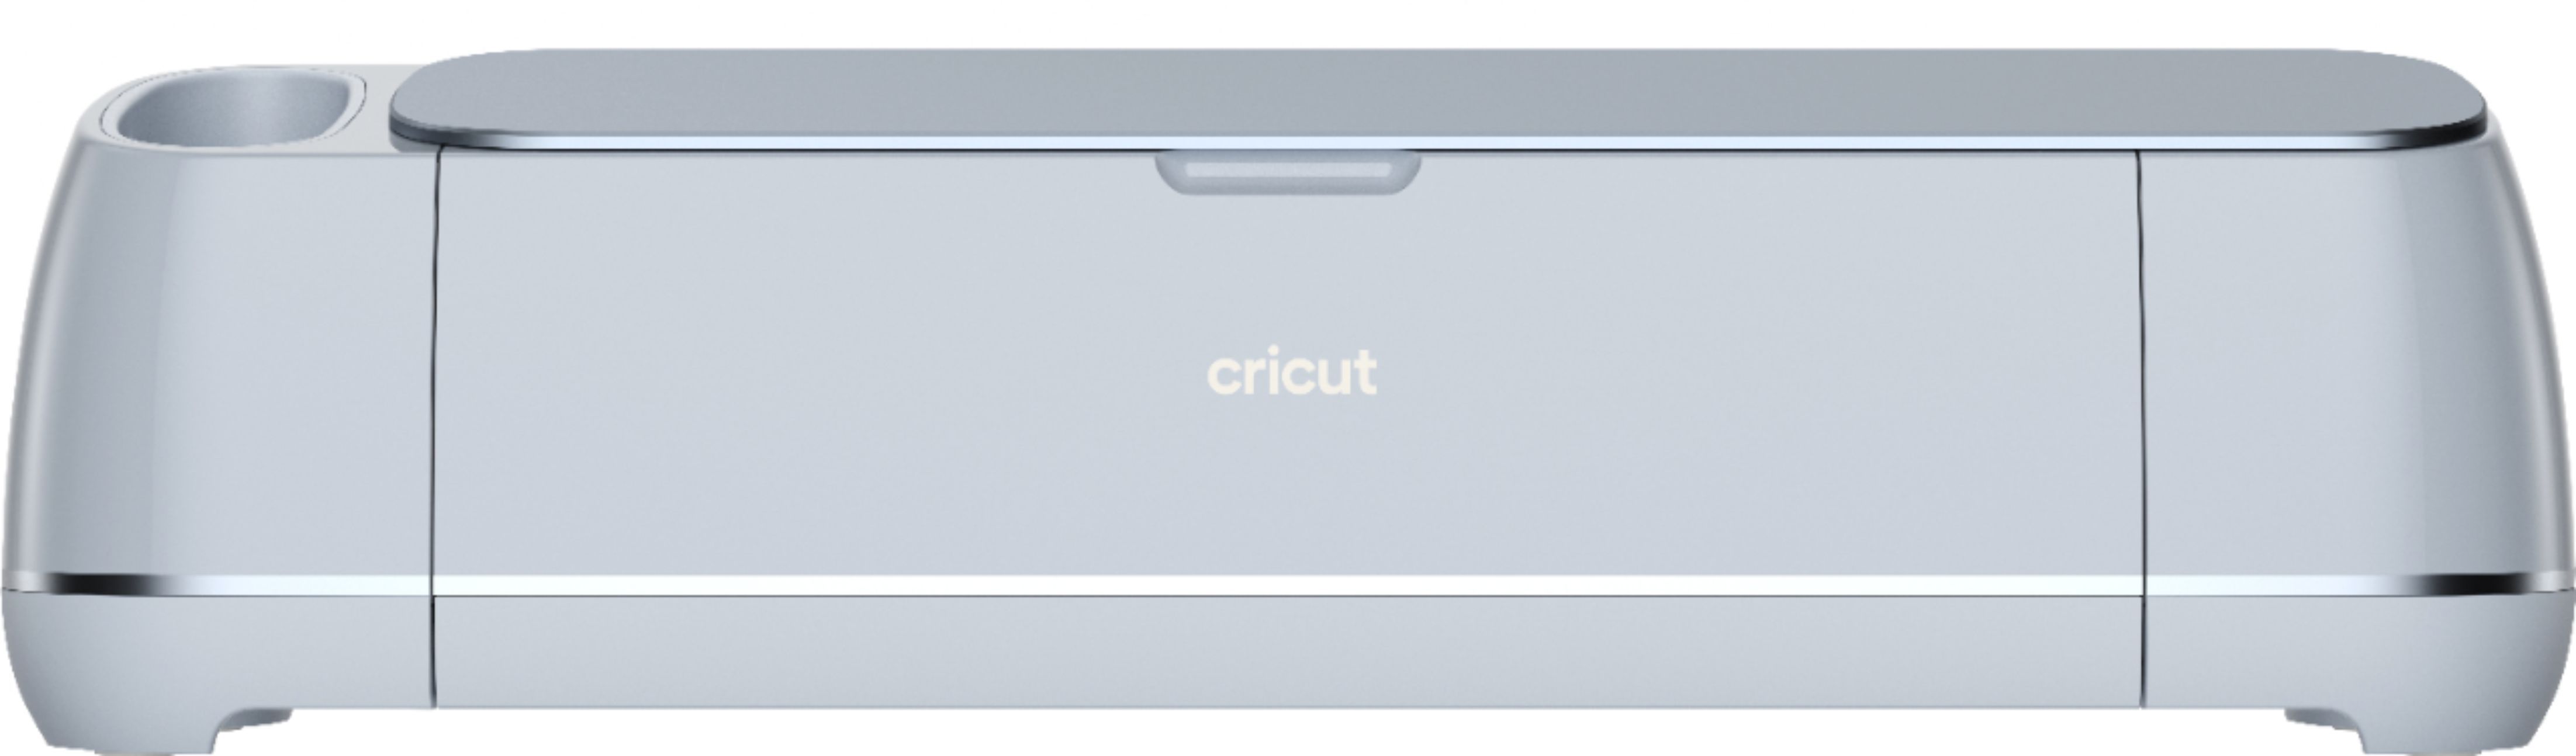 Cricut Maker 3 2008334 - Best Buy | Best Buy U.S.